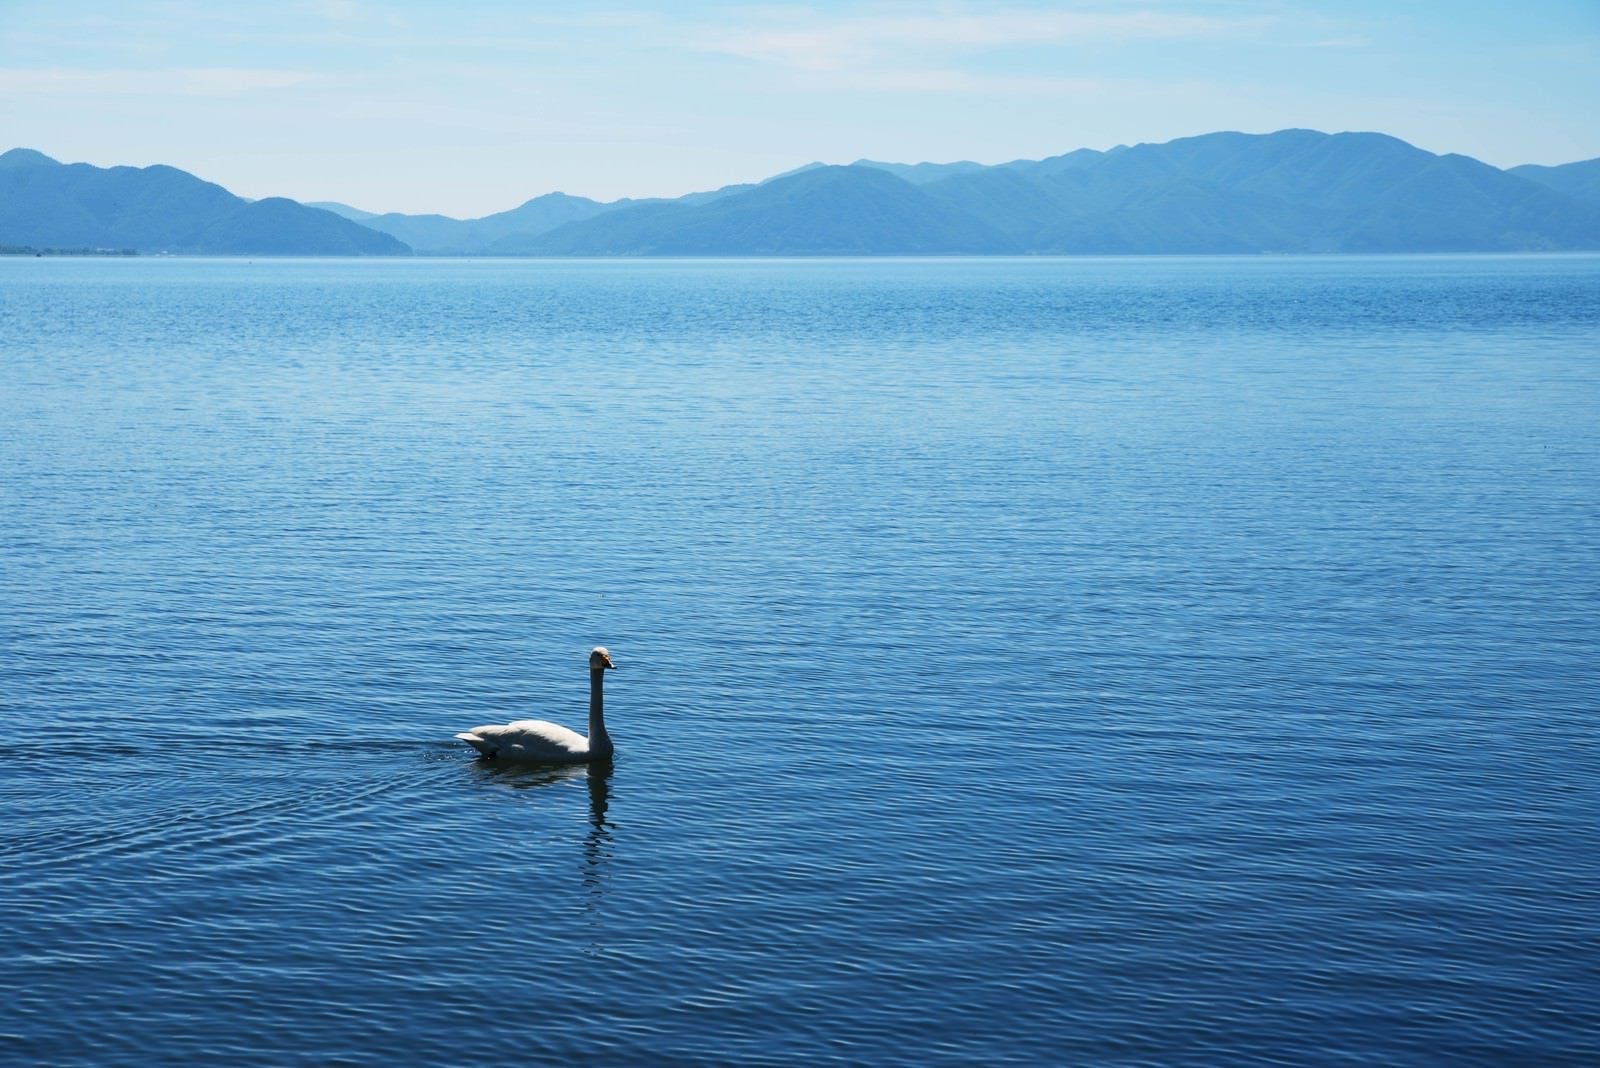 「猪苗代湖を悠々と泳ぐ白鳥」の写真